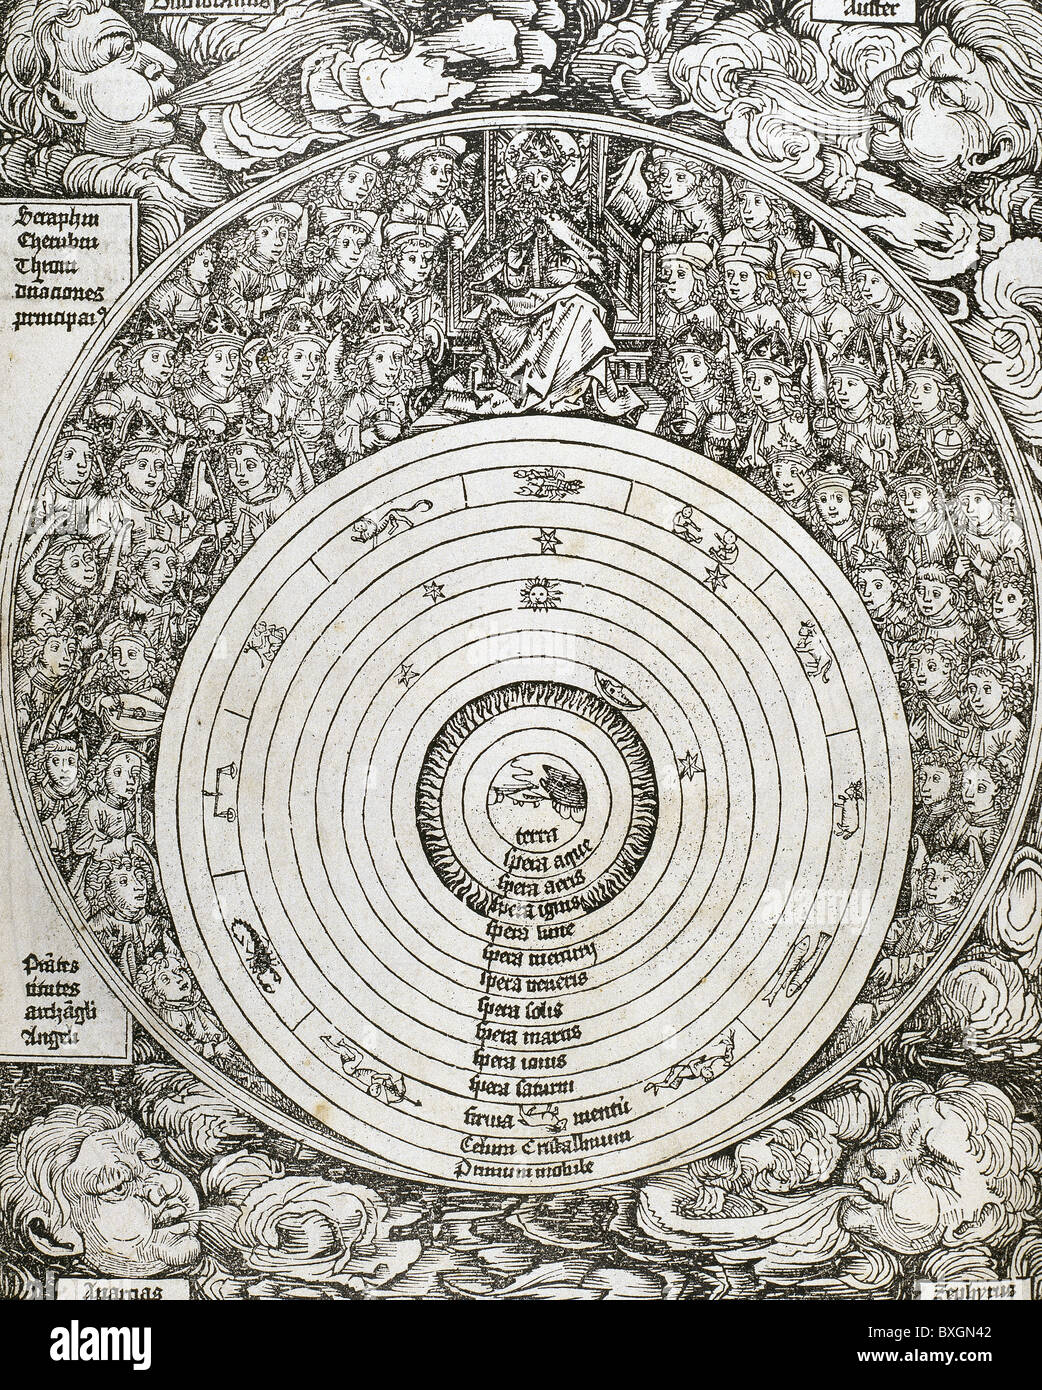 Das Universum mit Planeten, Sternzeichen und die himmlische Hierarchie. Gravur. 16. Jahrhundert. Stockfoto